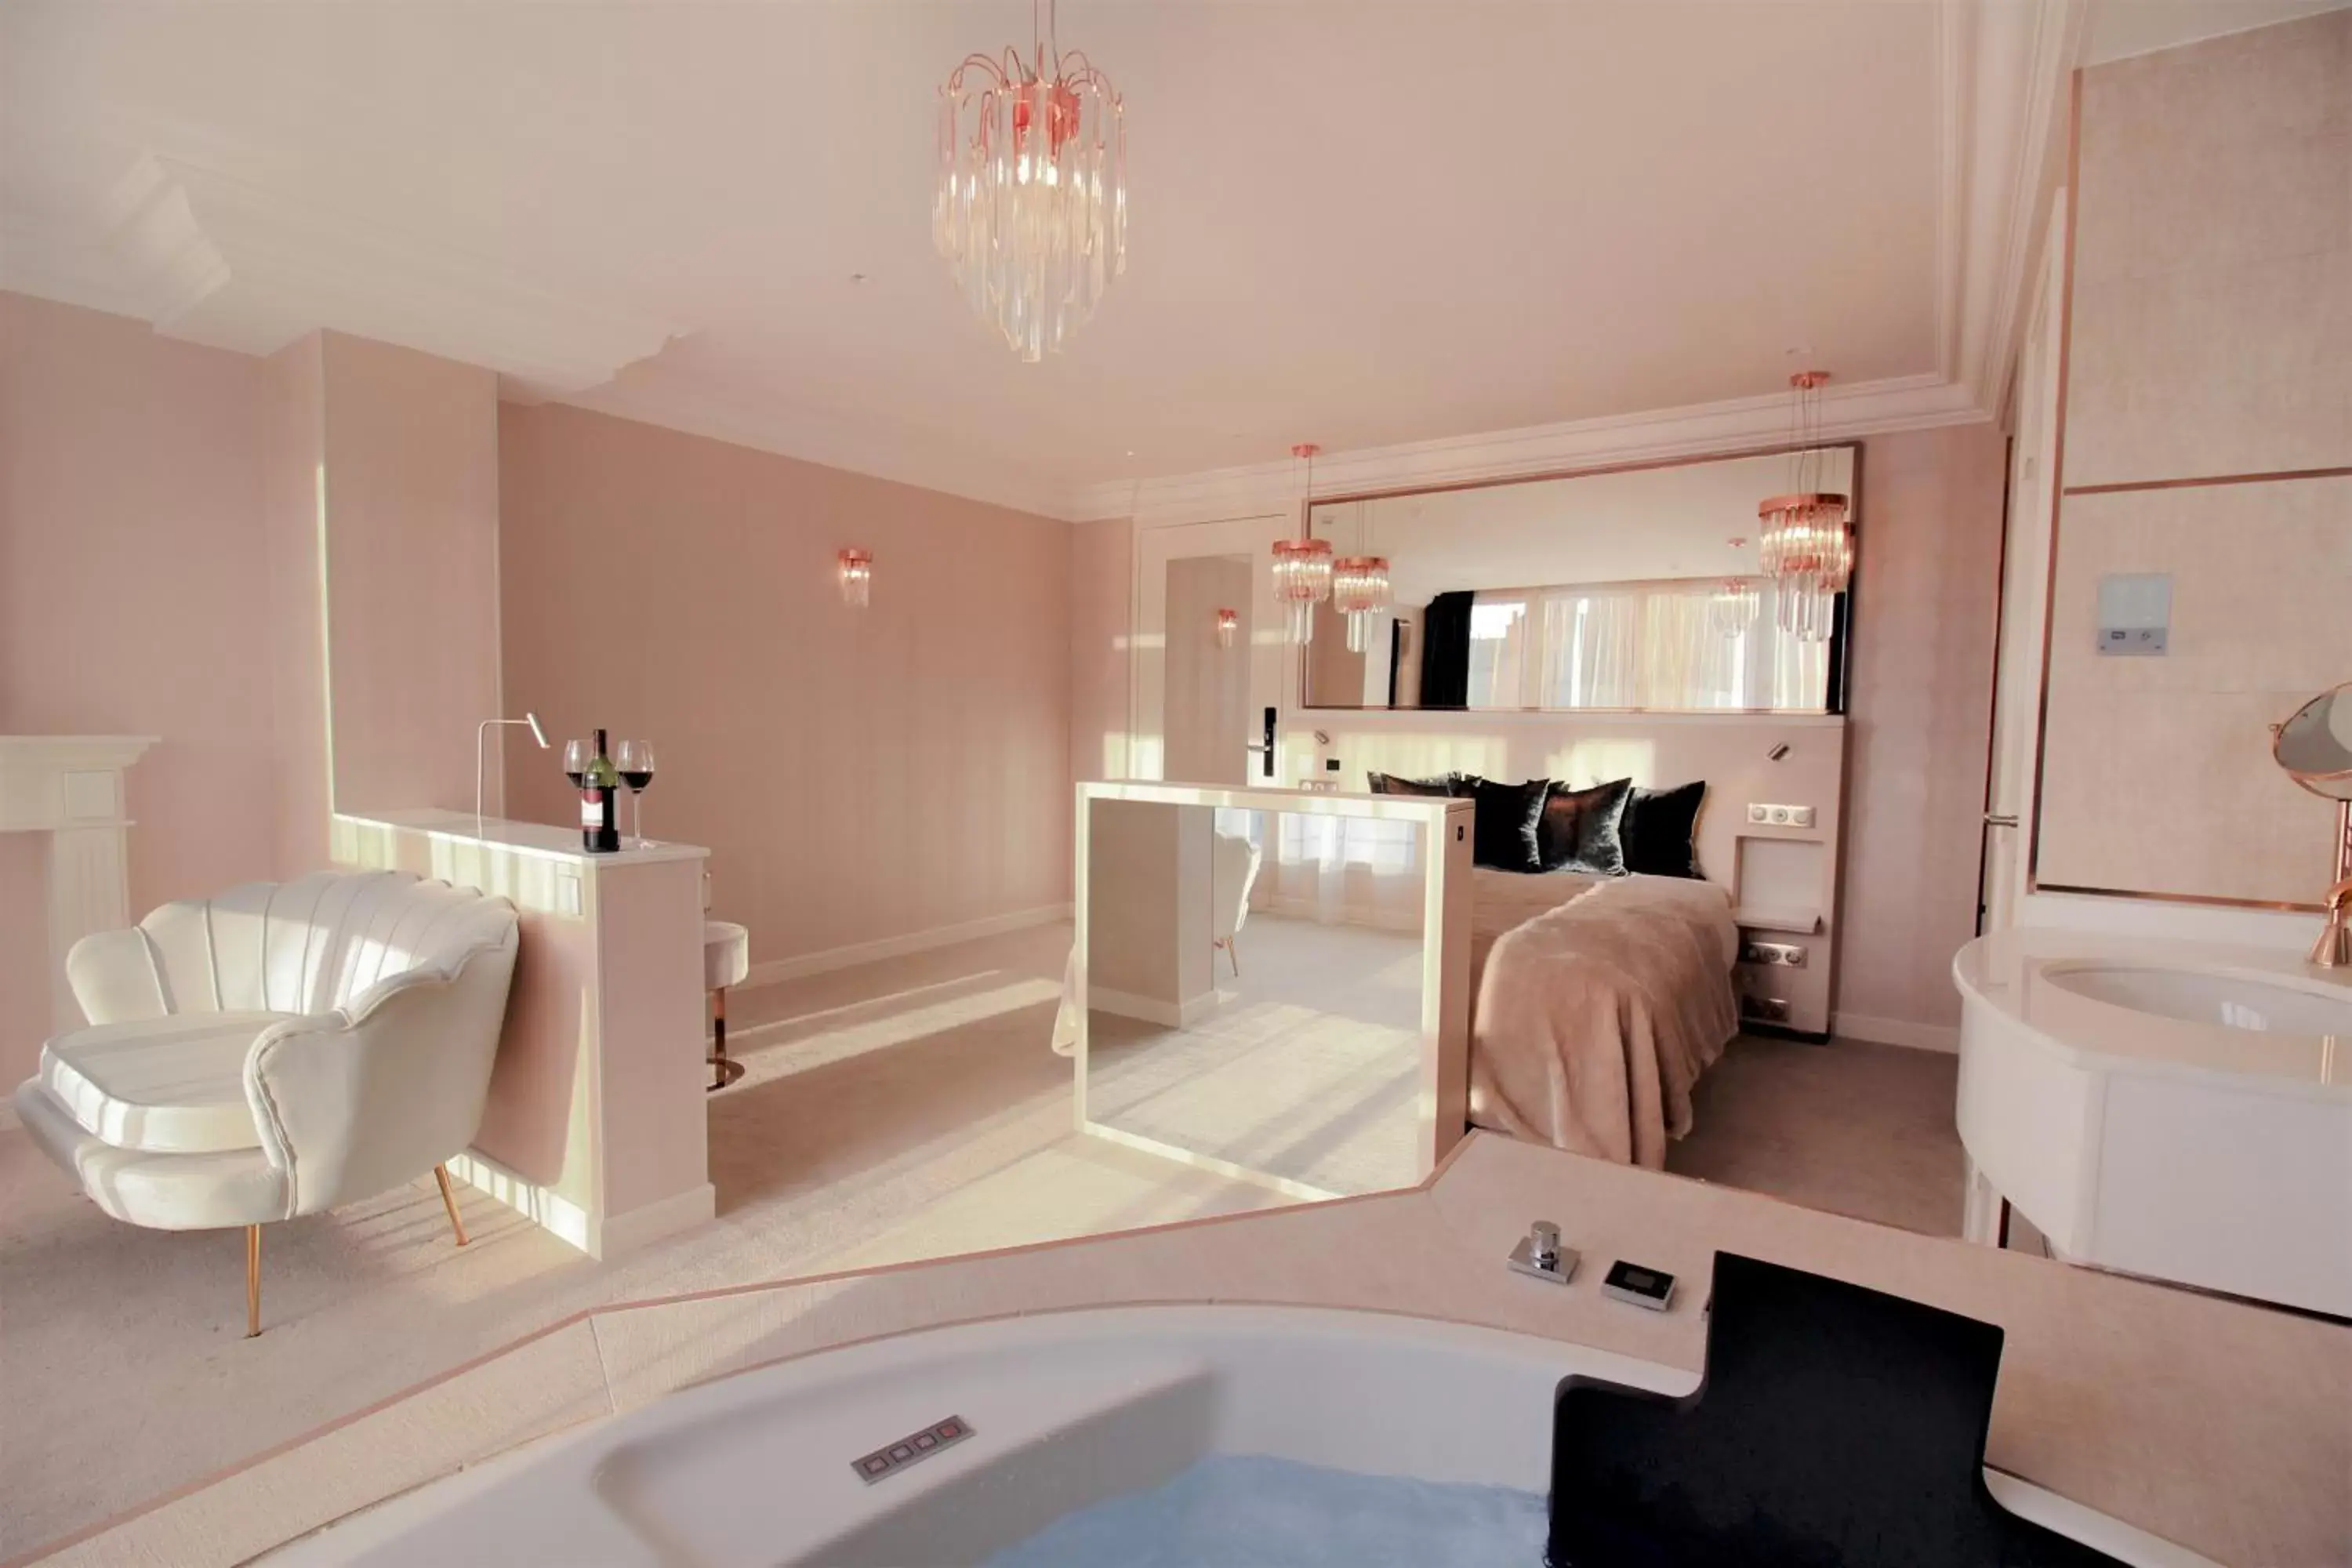 Bedroom, Bathroom in Paris j'Adore Hotel & Spa